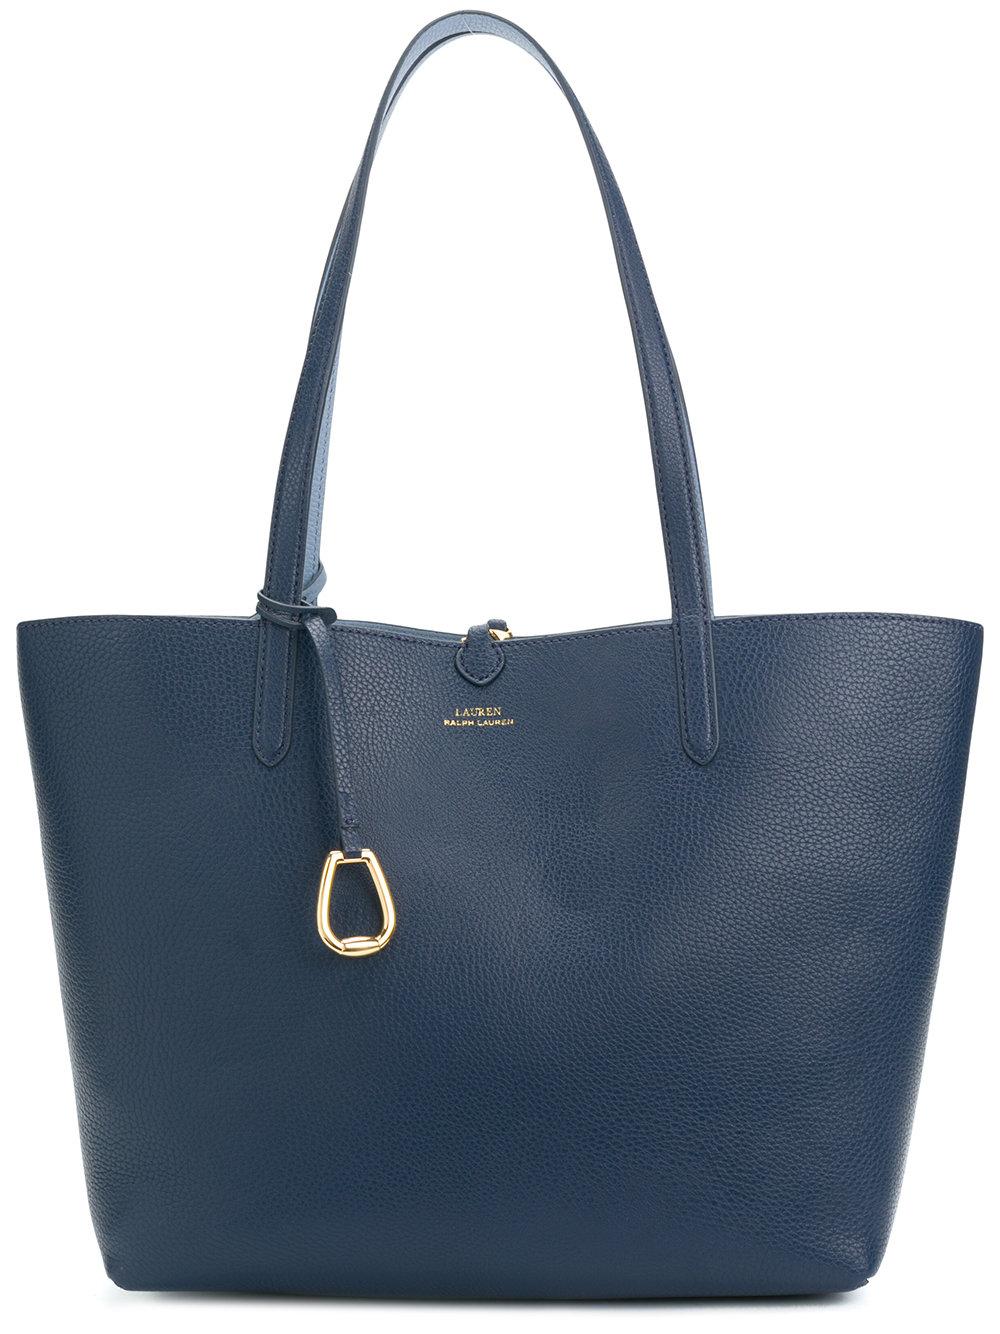 Lauren Ralph Lauren Classic Shopper Tote In Blue | ModeSens